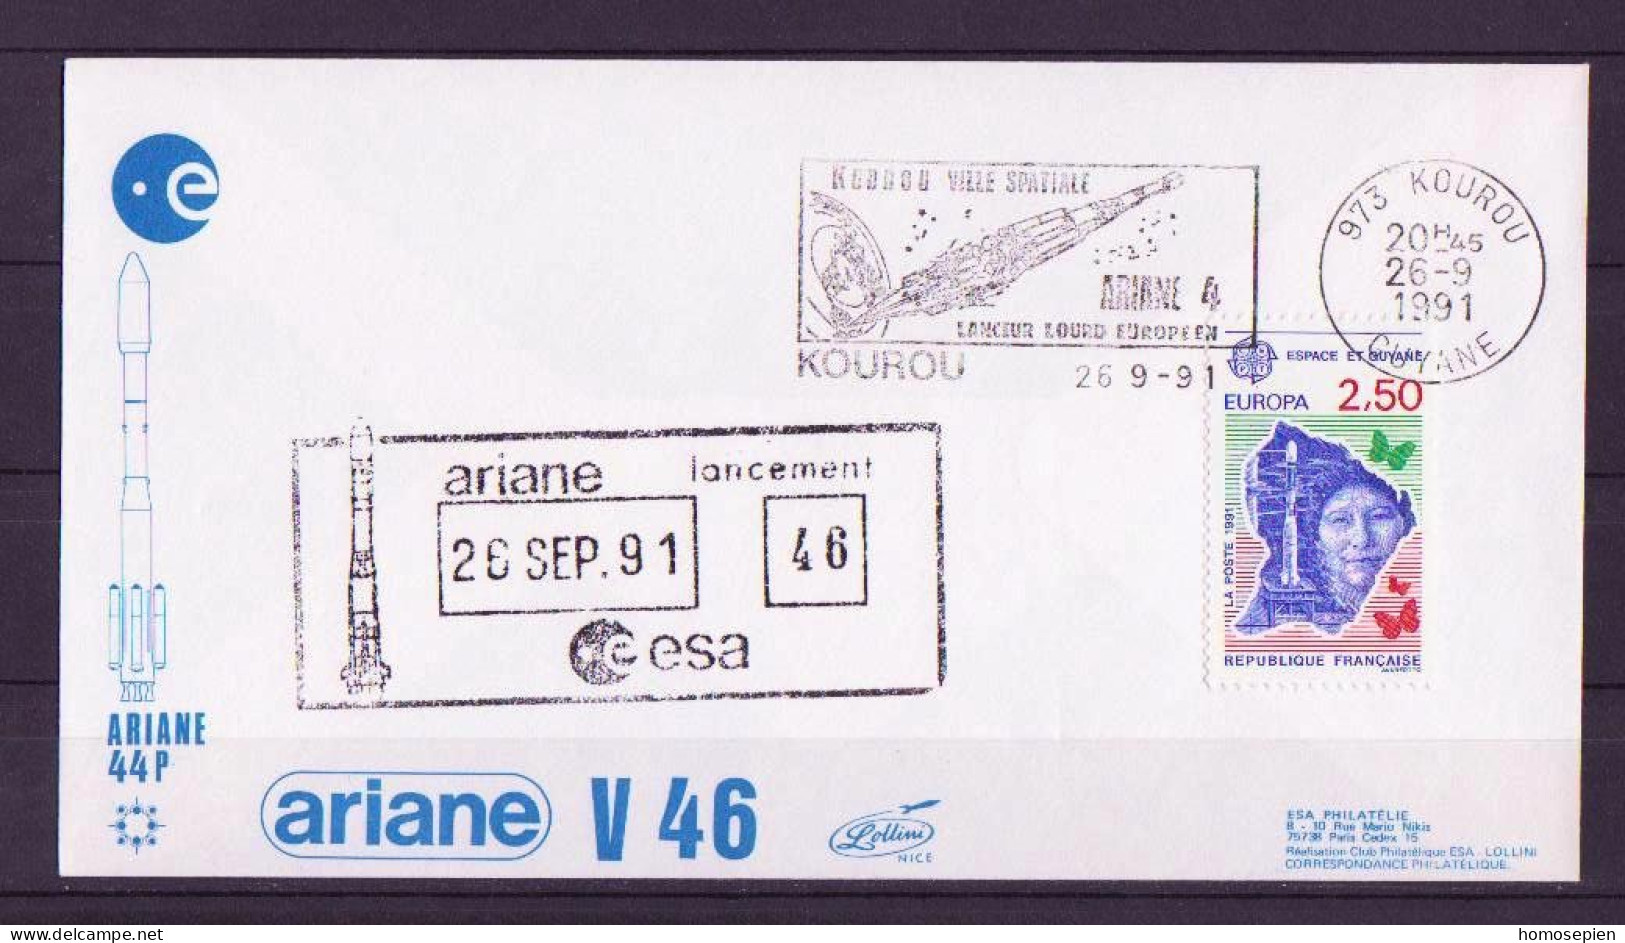 Espace 1991 09 27 - ESA - Ariane V46 - Officielle - Kourou - Europe